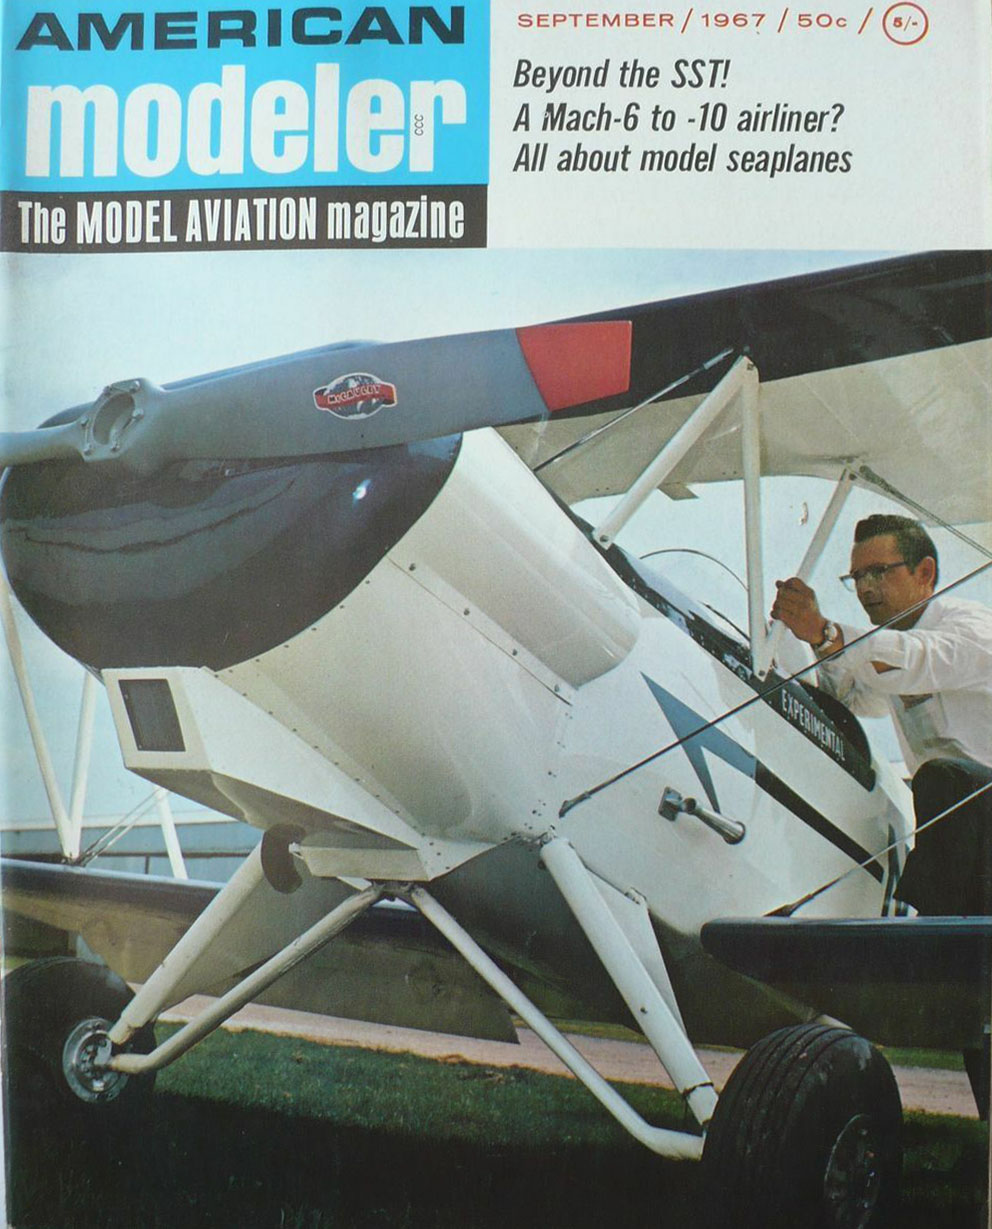 American Modeler September 1967 magazine back issue American Modeler magizine back copy 